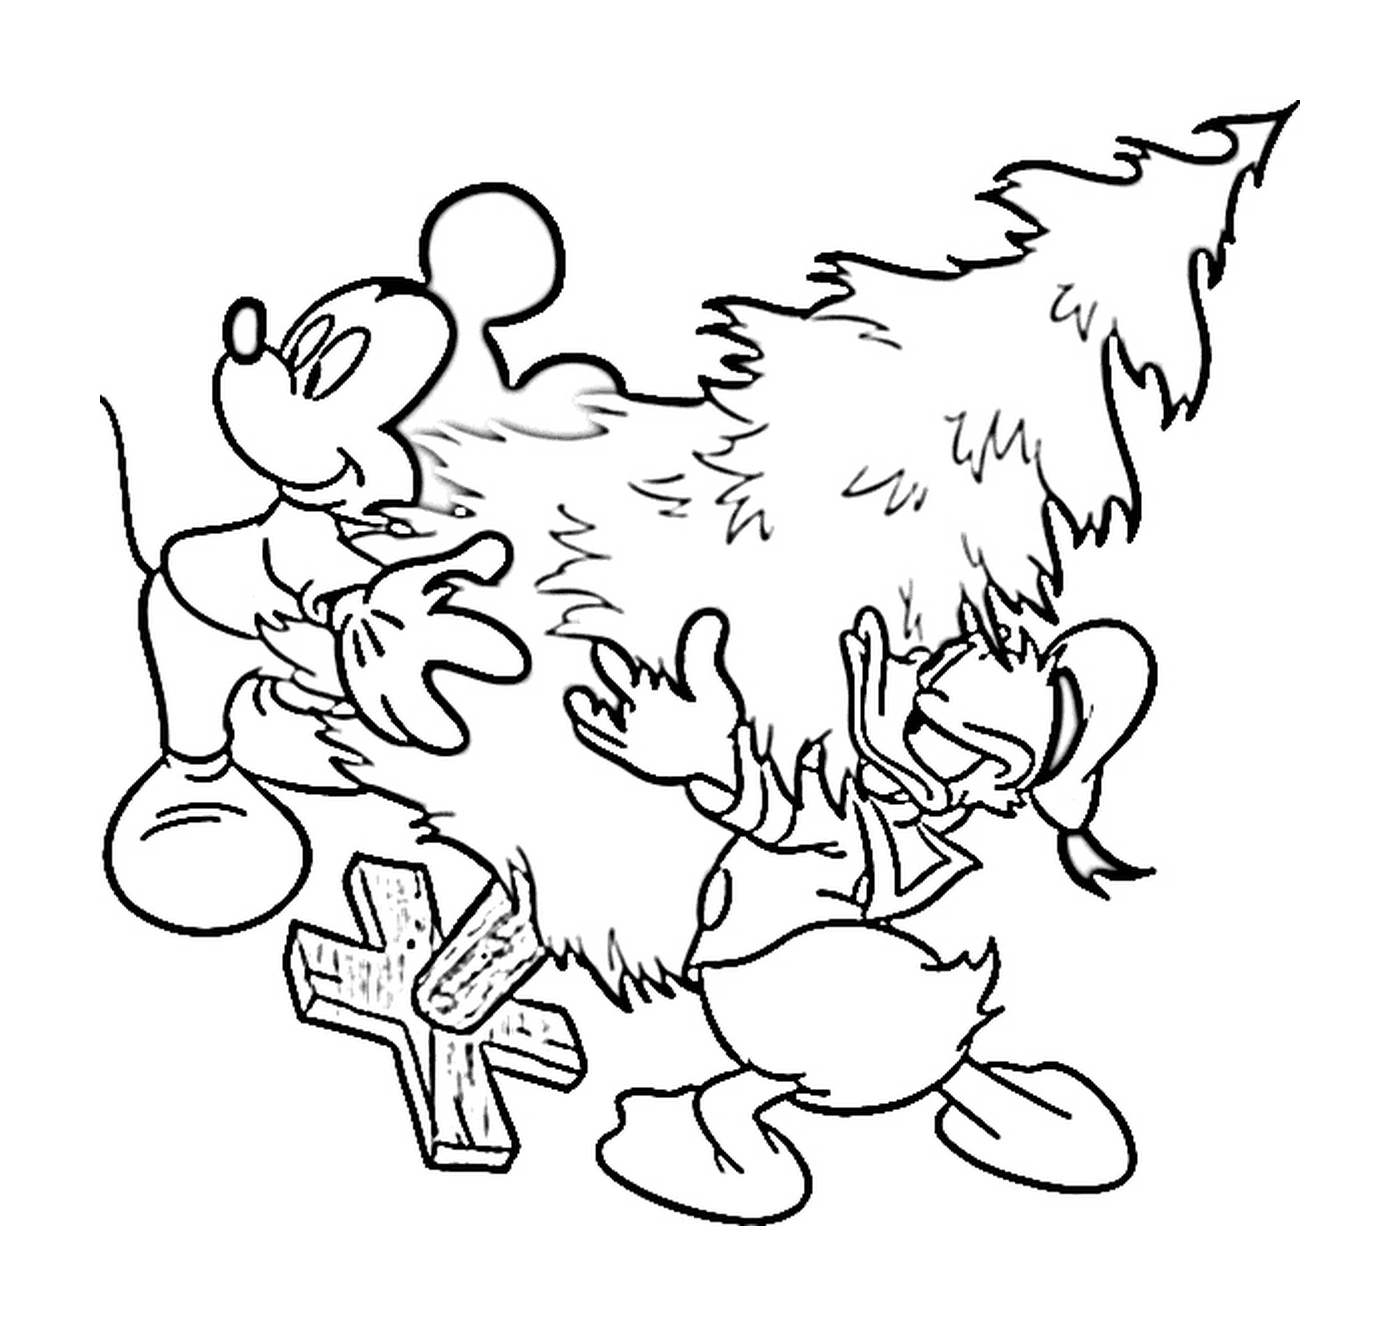  Cartoon personaggio di Goofy 